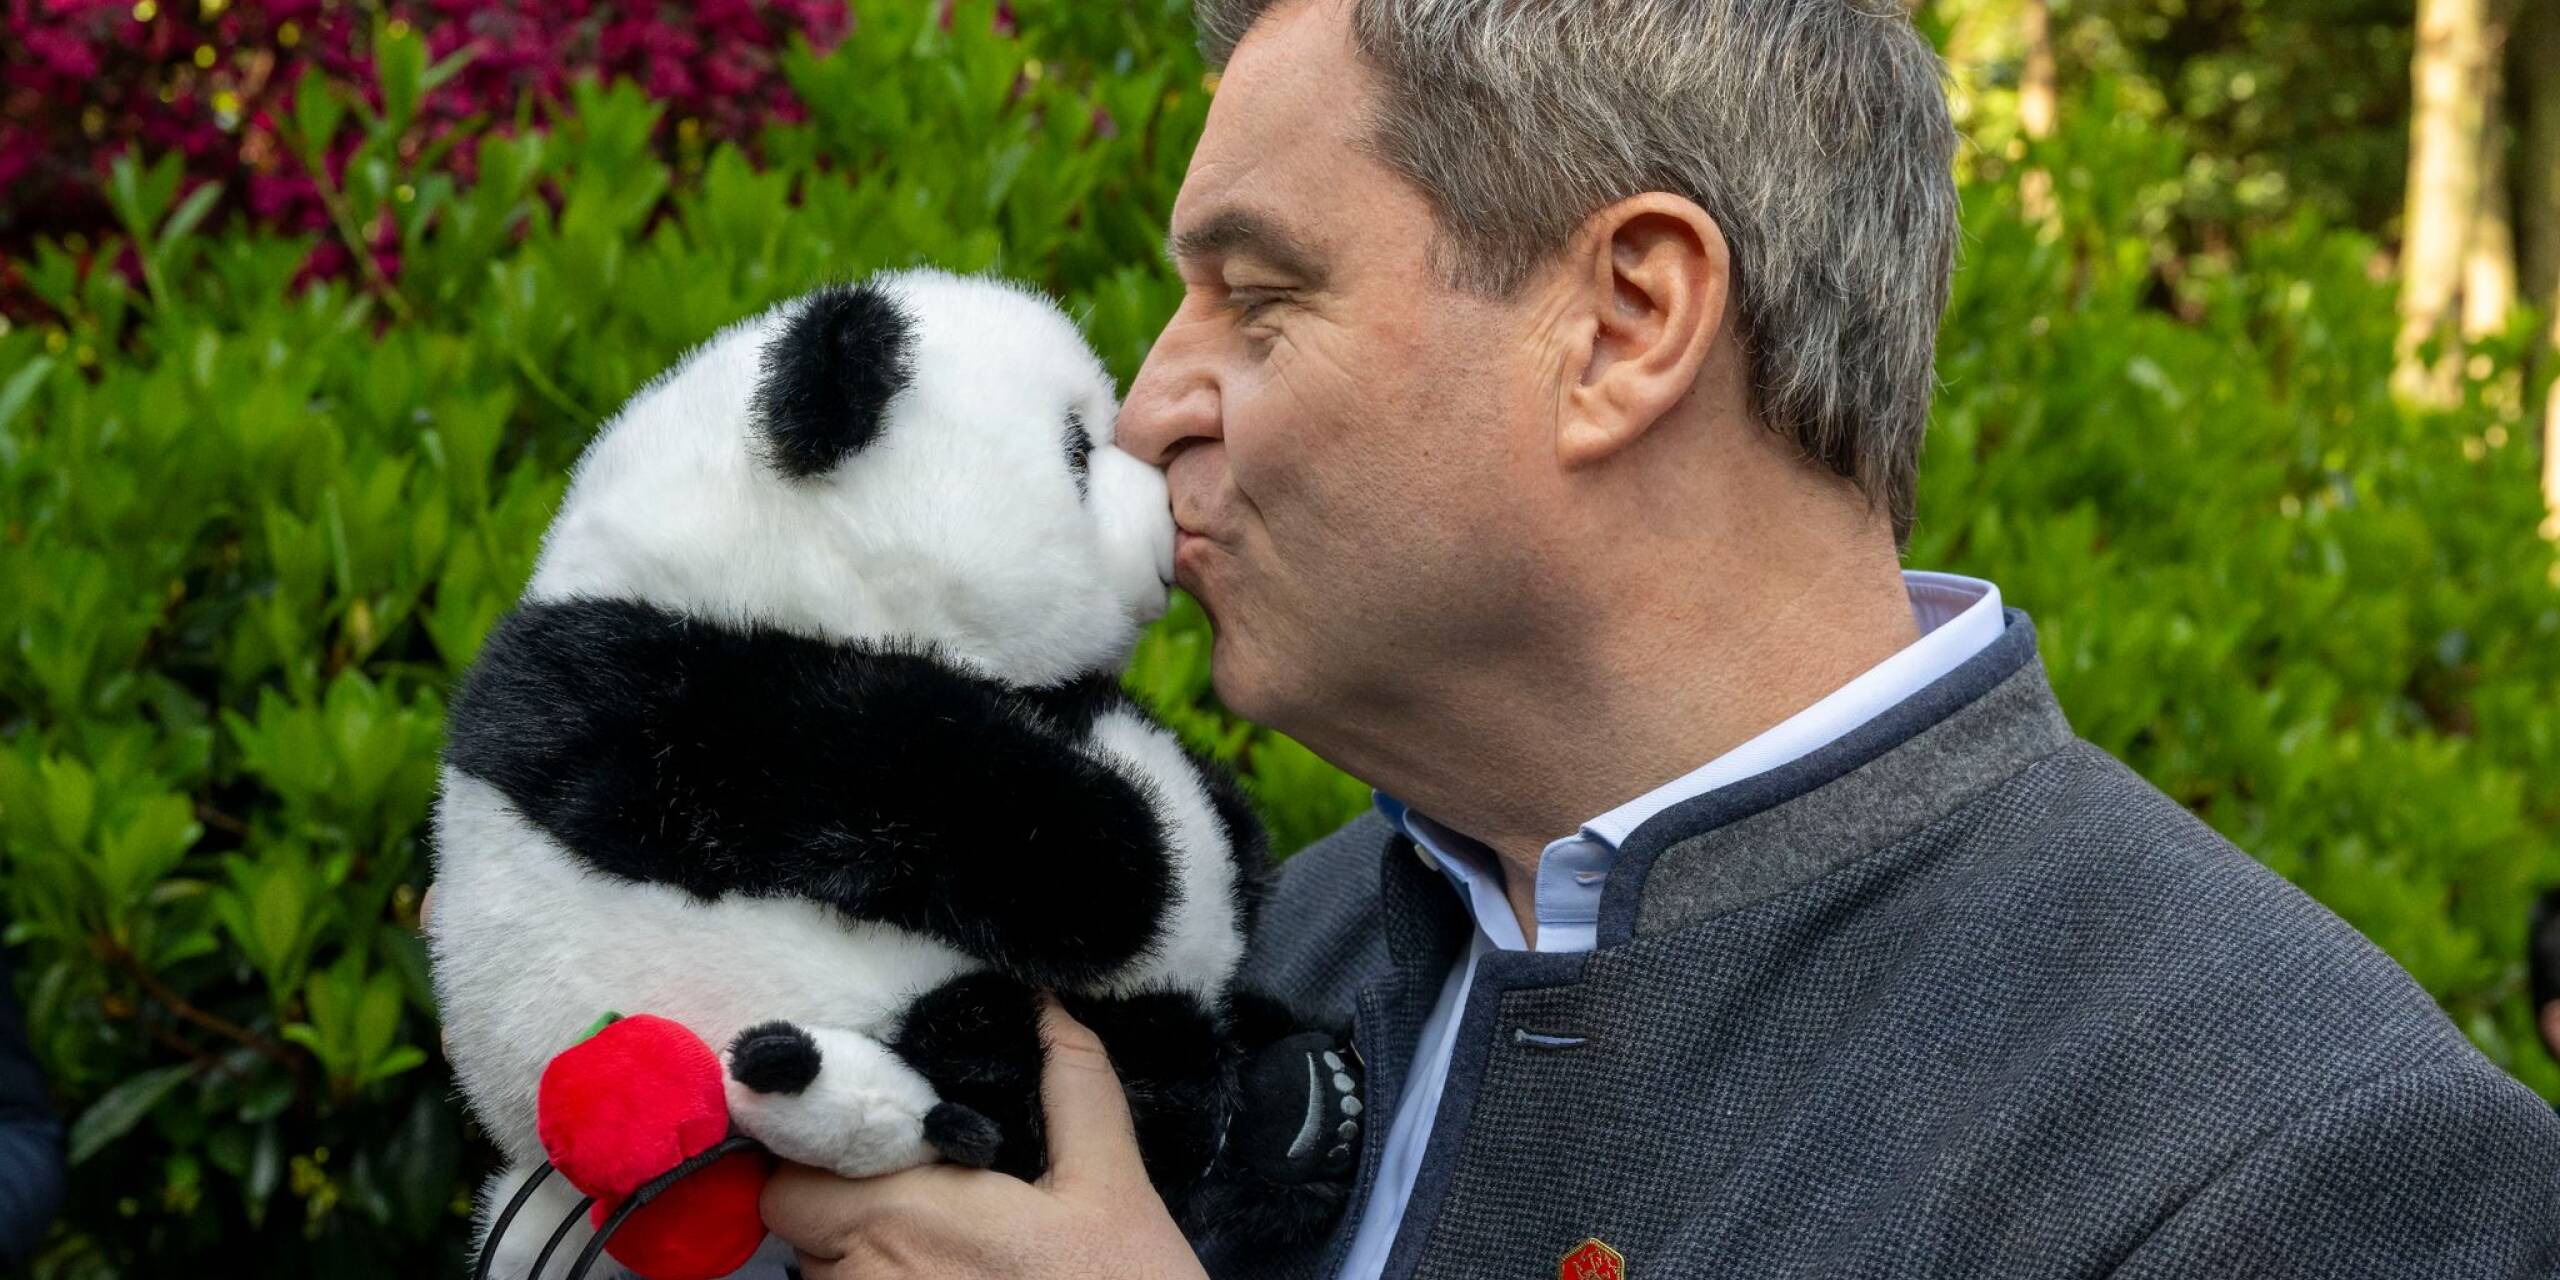 Bayerns Ministerpräsident Markus Söder besucht eine Pandabären-Forschungseinrichtung im chinesischen Chengdu - und freut sich über den geschenkten Plüschpanda.